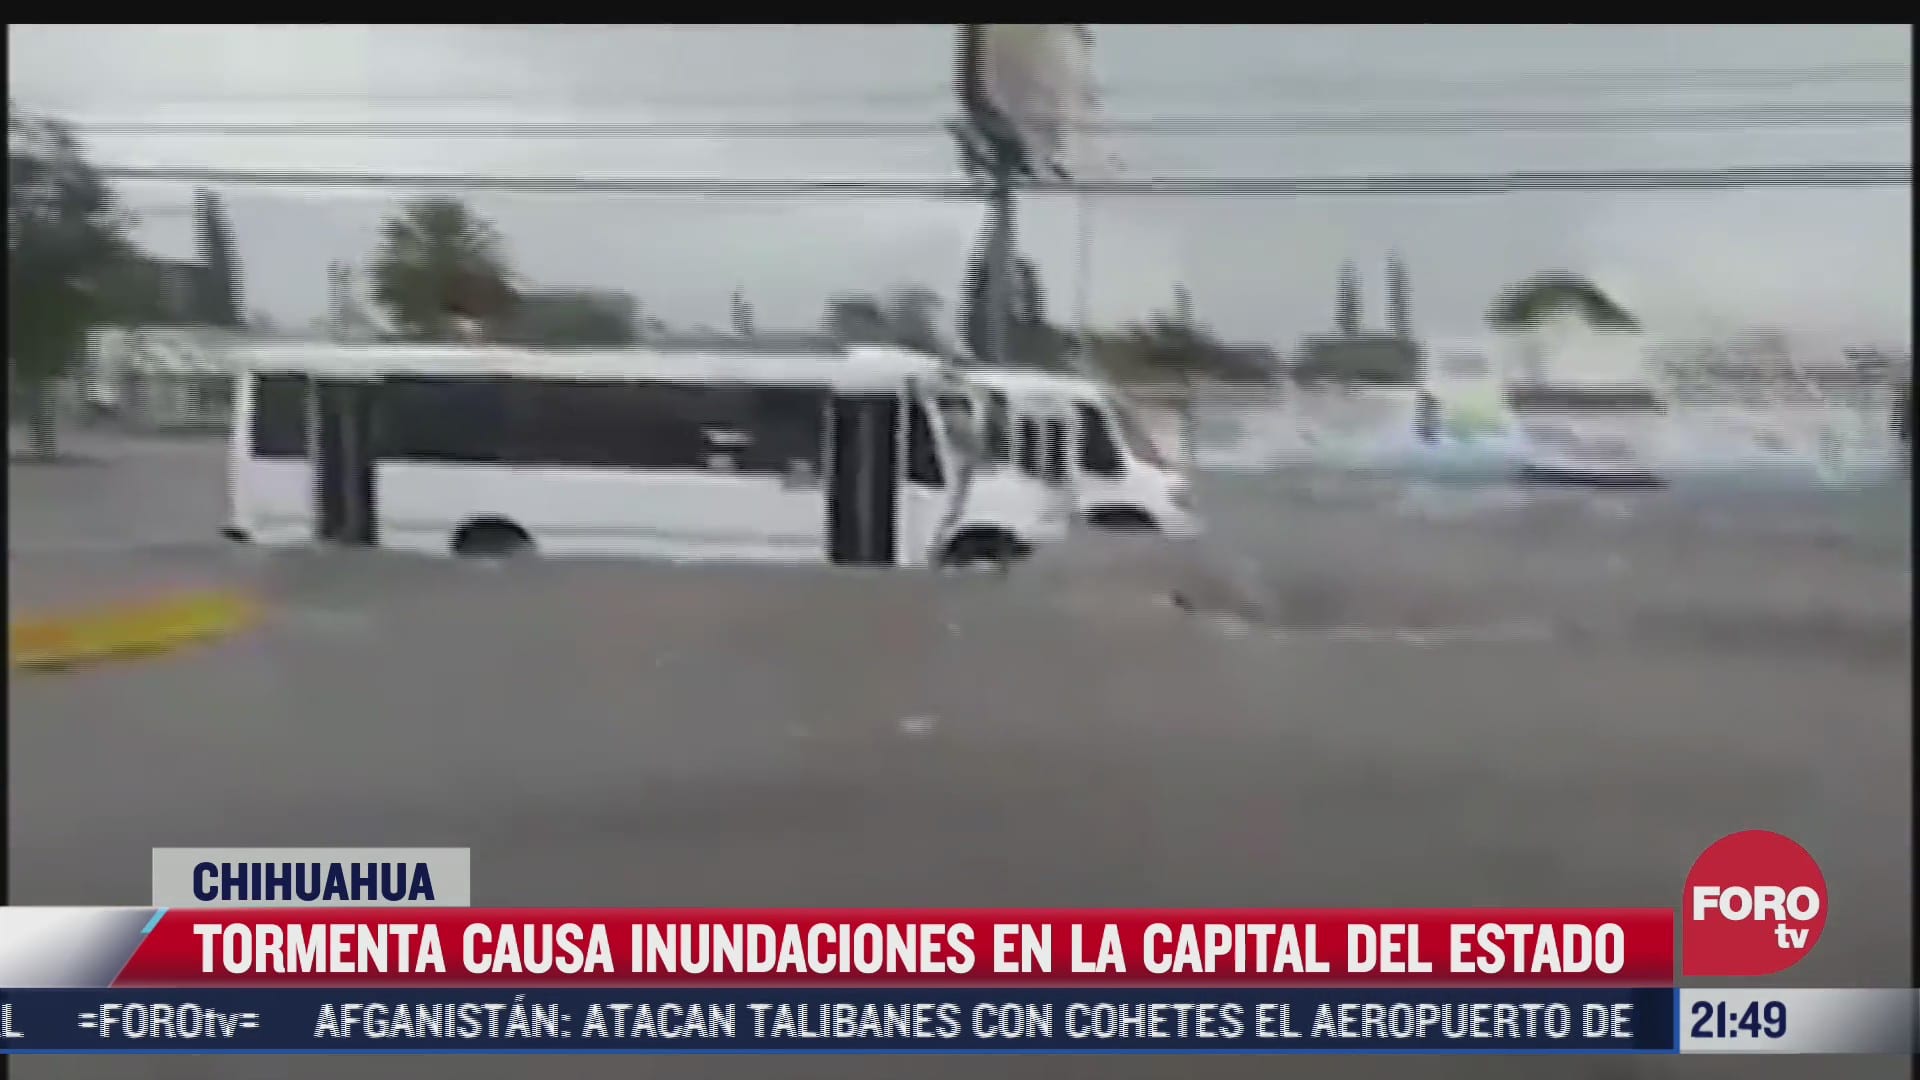 tormenta causa inundaciones en la capital de chihuahua